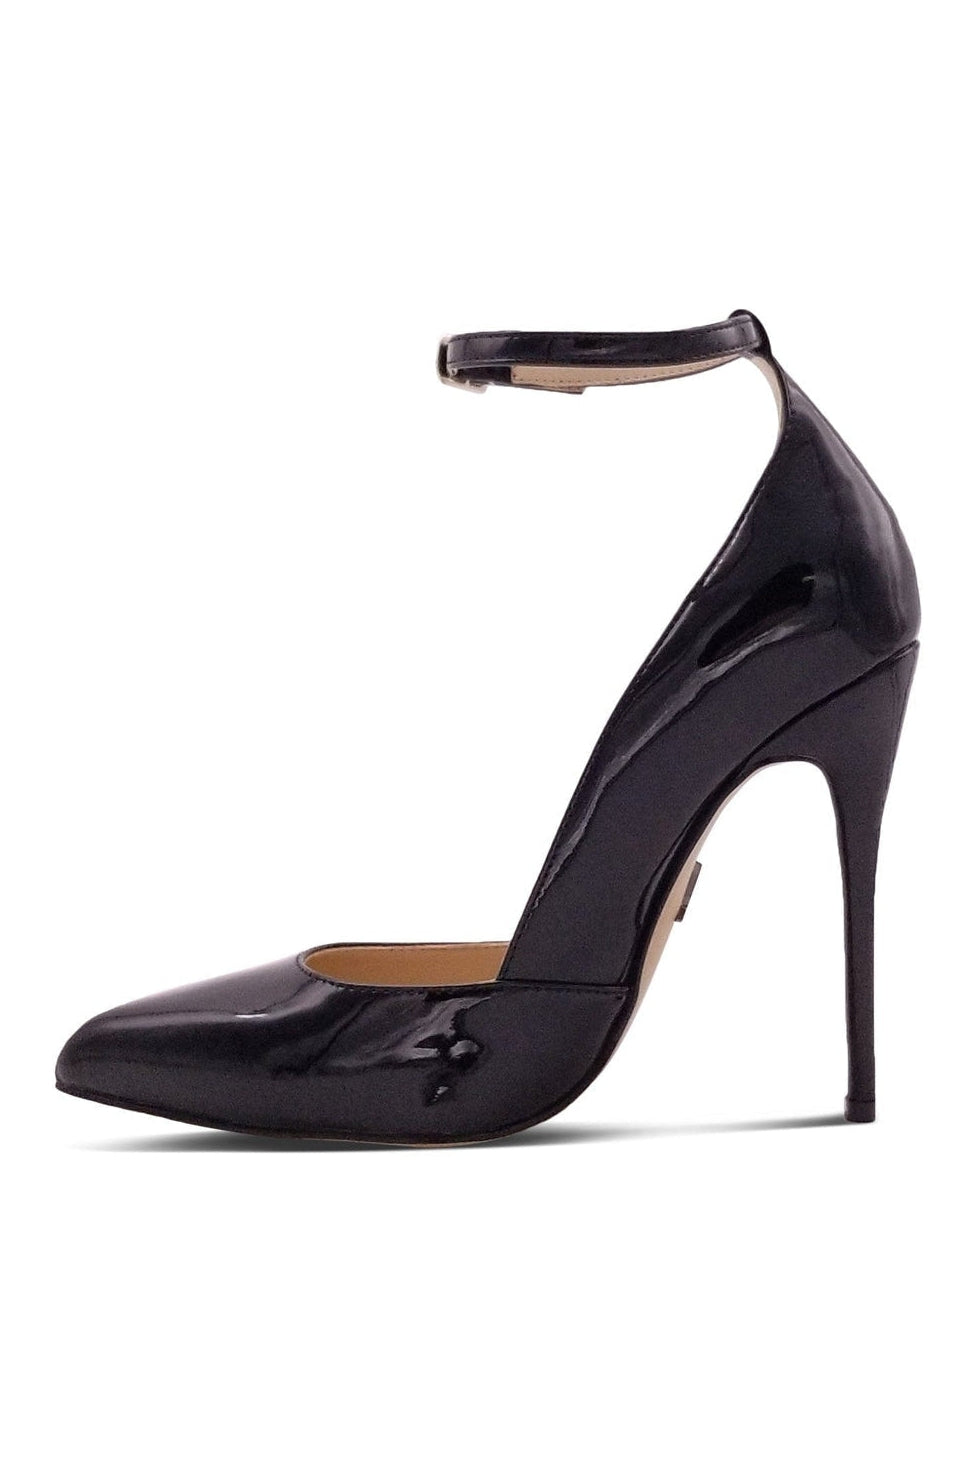 Sexy A-Line Ankle Strap Stiletto Pump-Pumps-Sexyshoes Signature-Black-SEXYSHOES.COM